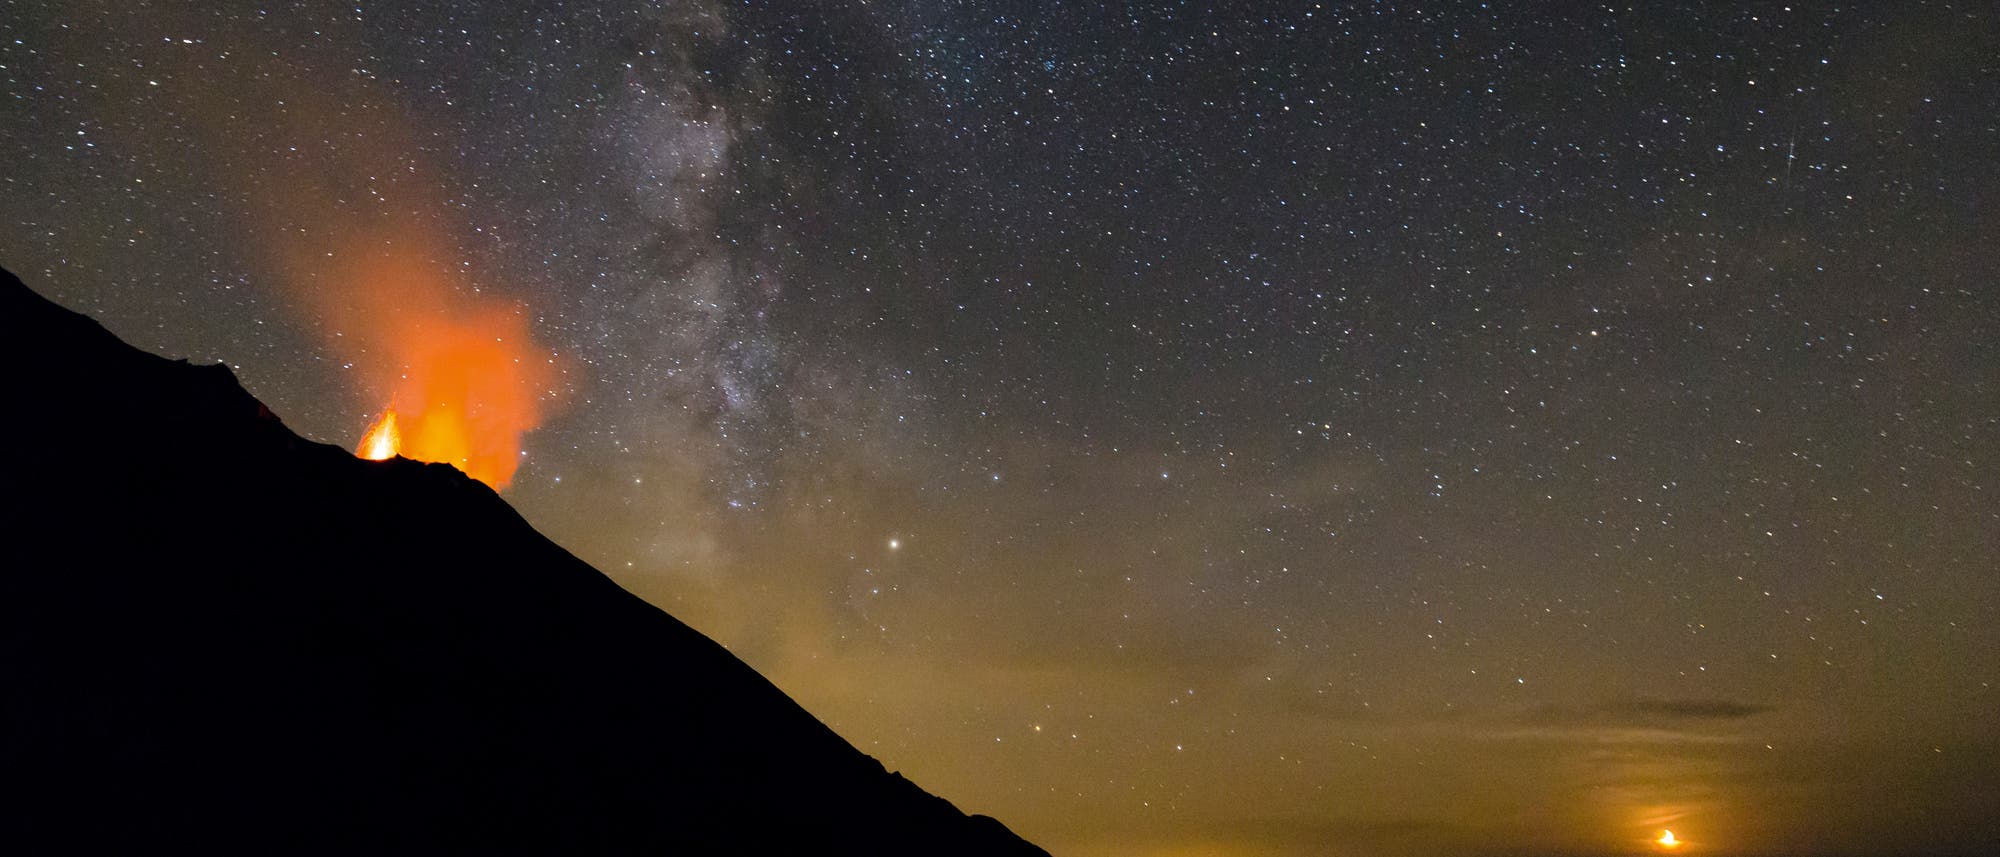 "Eigentlich besuchten wir die Insel wegen des Vulkans", berichtet Felix Nendzig. "Erst vor Ort merkte ich, wie dunkel es nachts auf Stromboli ist. So hatten wir die einzigartige Möglichkeit, Lavafontänen und einen fantastischen Sternenhimmel gleichzeitig zu genießen." Die Aufnahme gelang am 23. September 2017 um 20:42 Uhr MESZ.